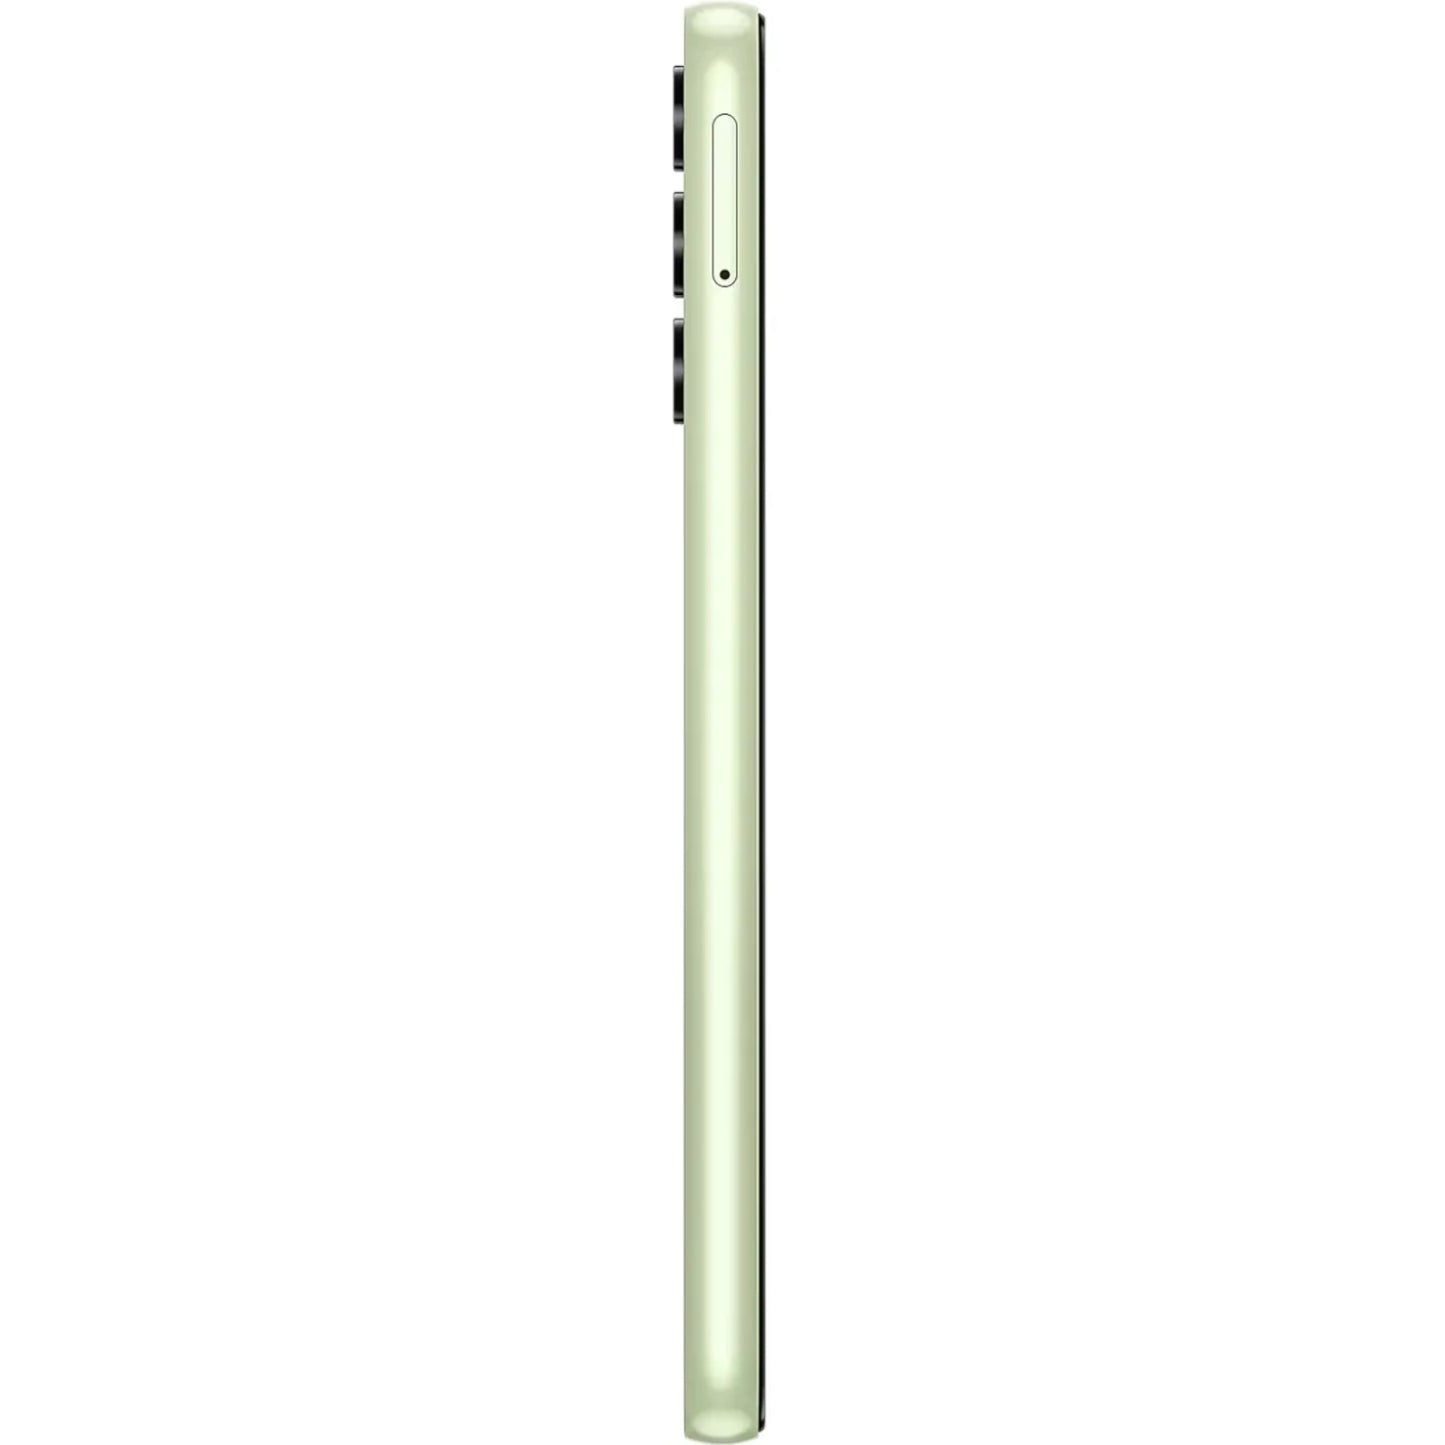 Samsung Galaxy A14 Dual Sim A145P 4G (4GB)